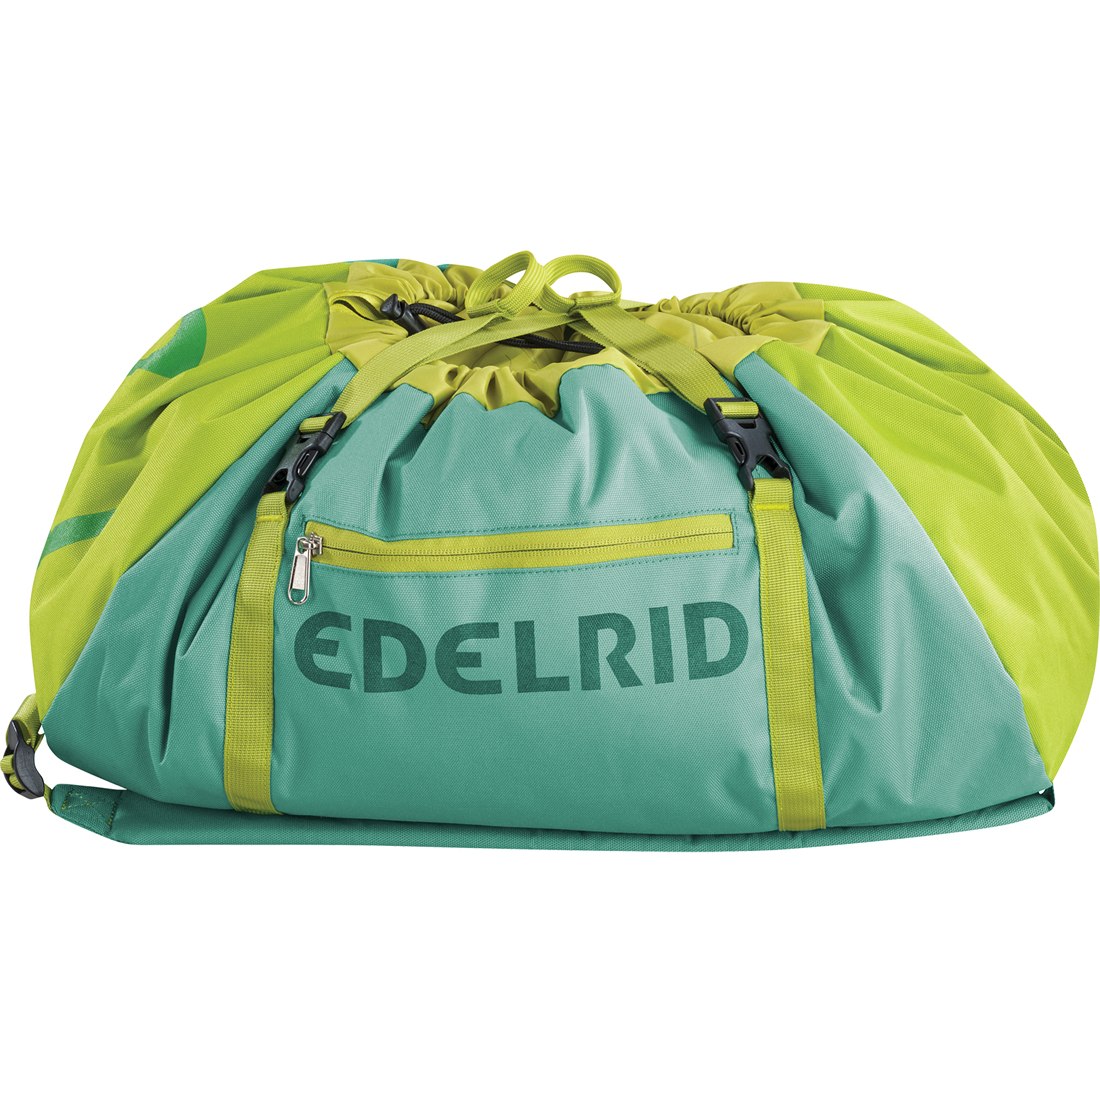 Produktbild von Edelrid Drone II Seilsack - jade